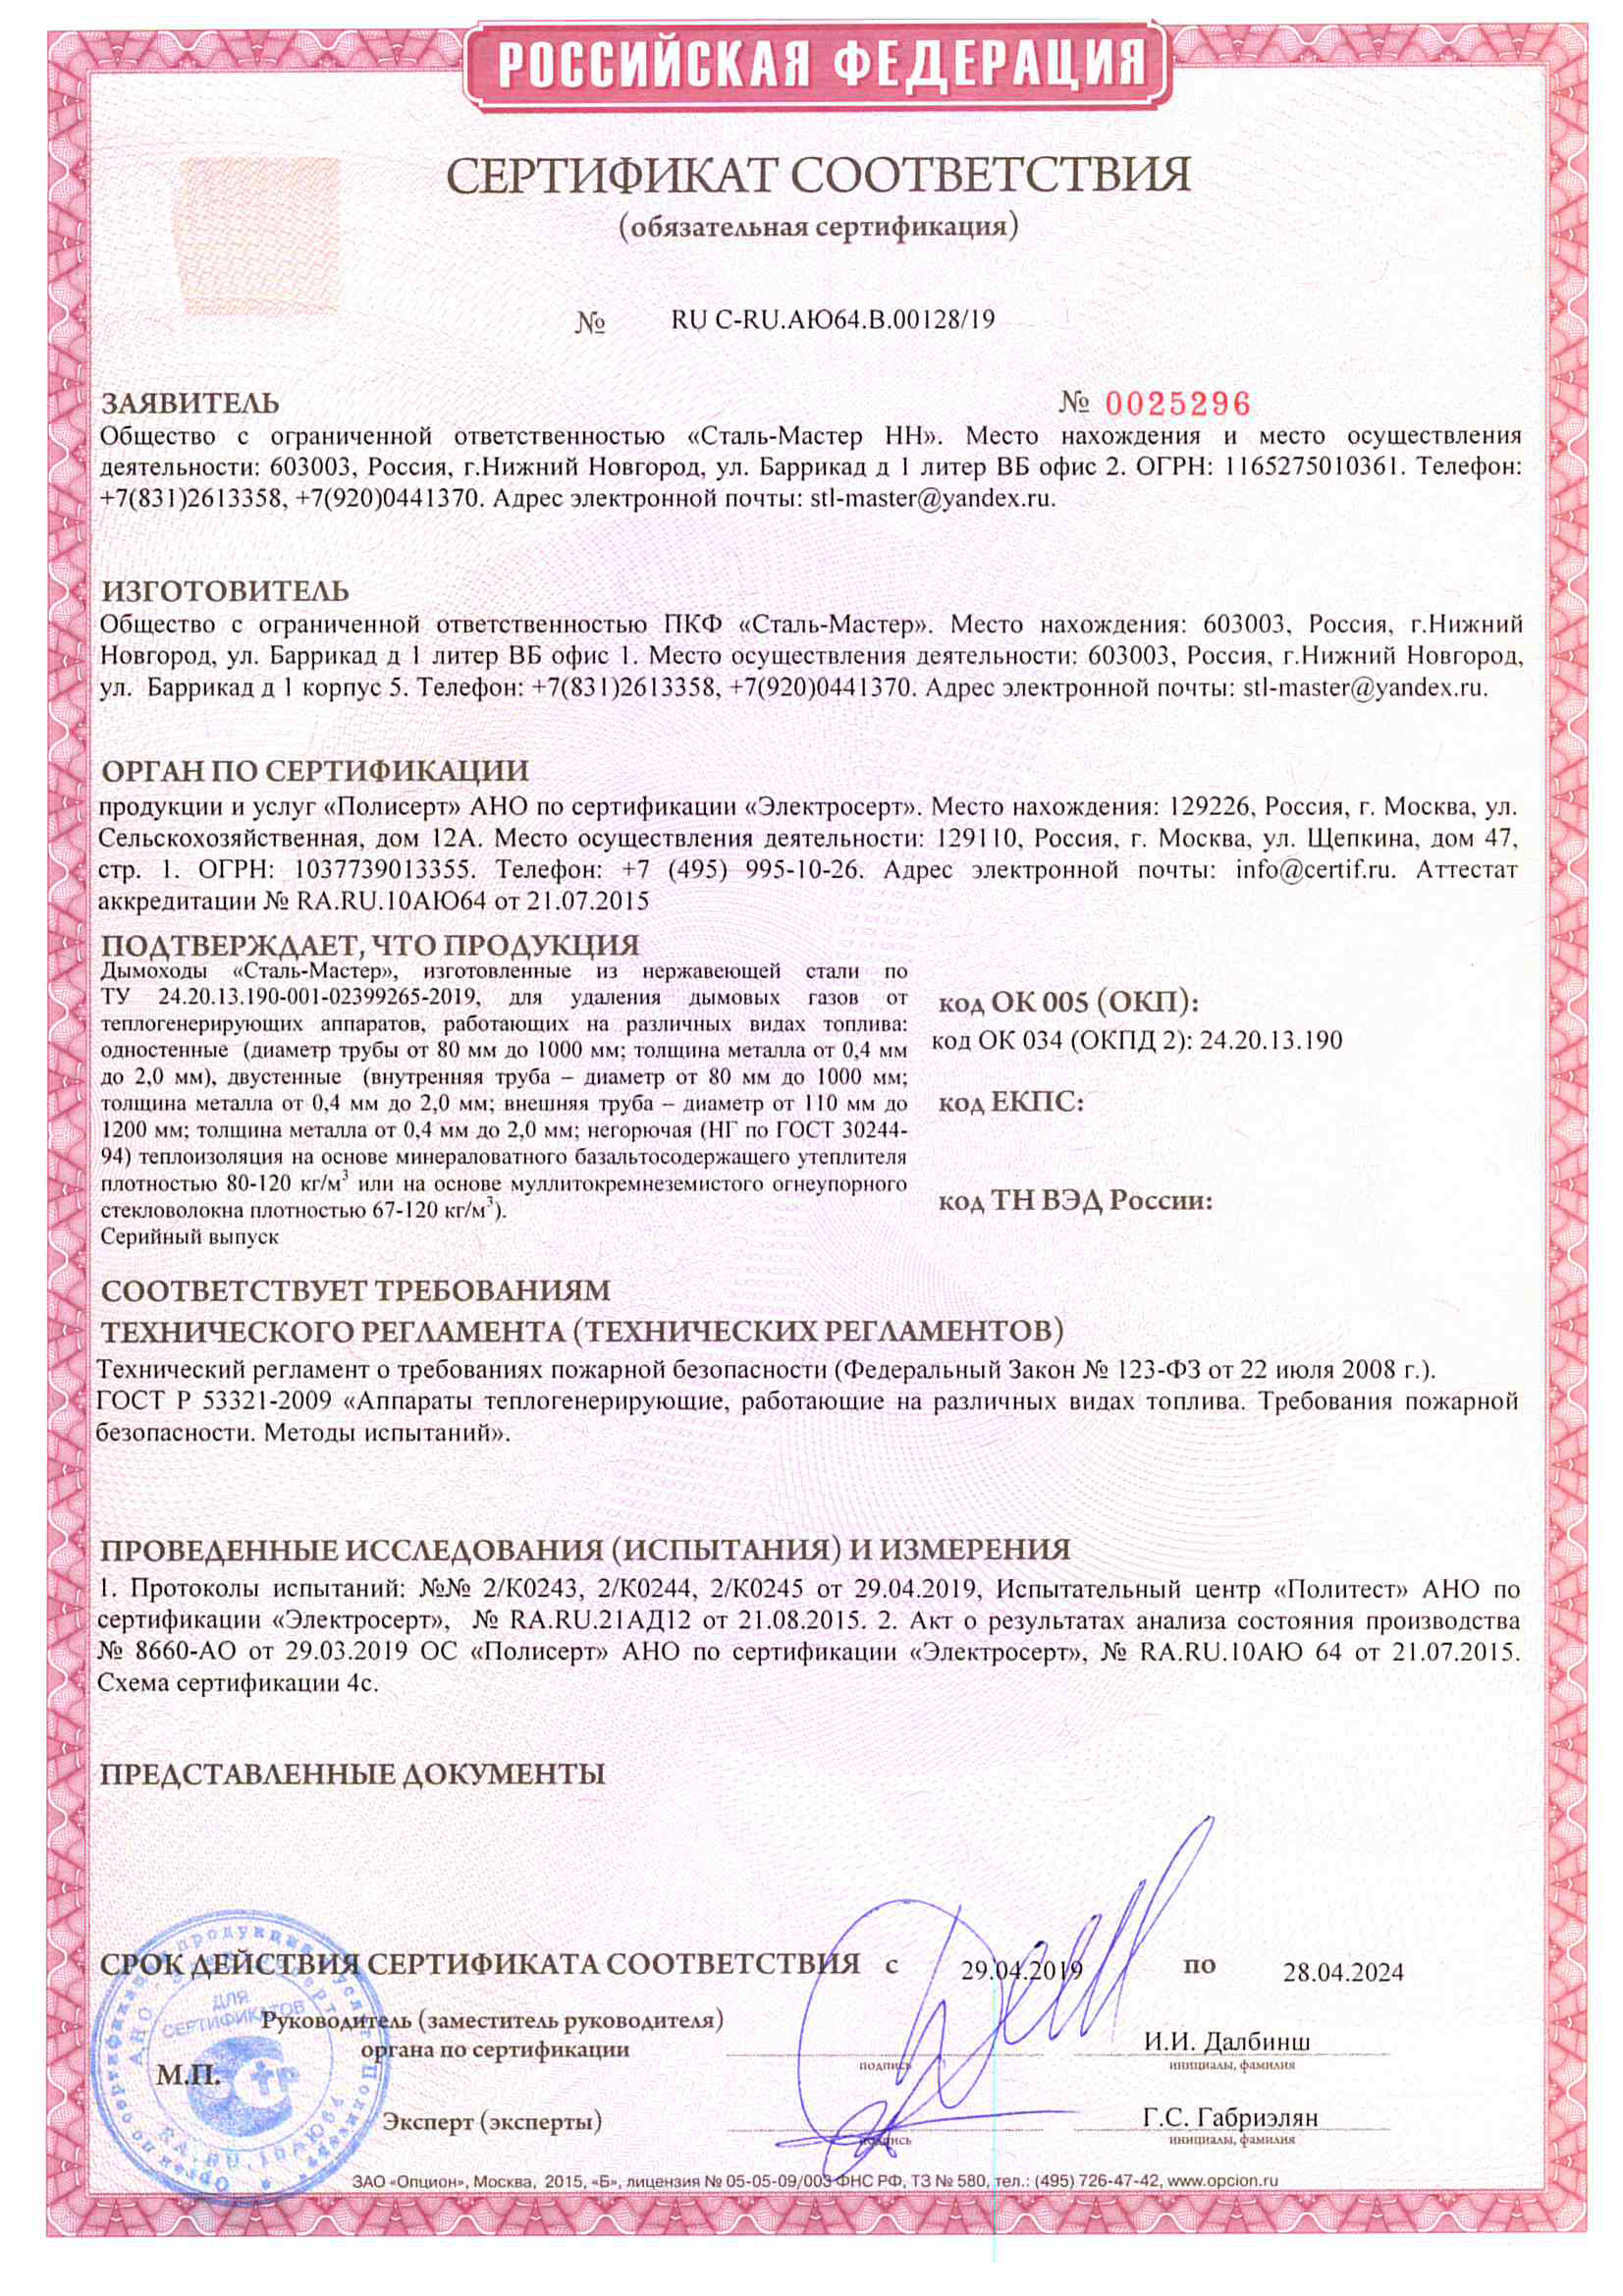 Сертификат пожарного соответствия дымоходов